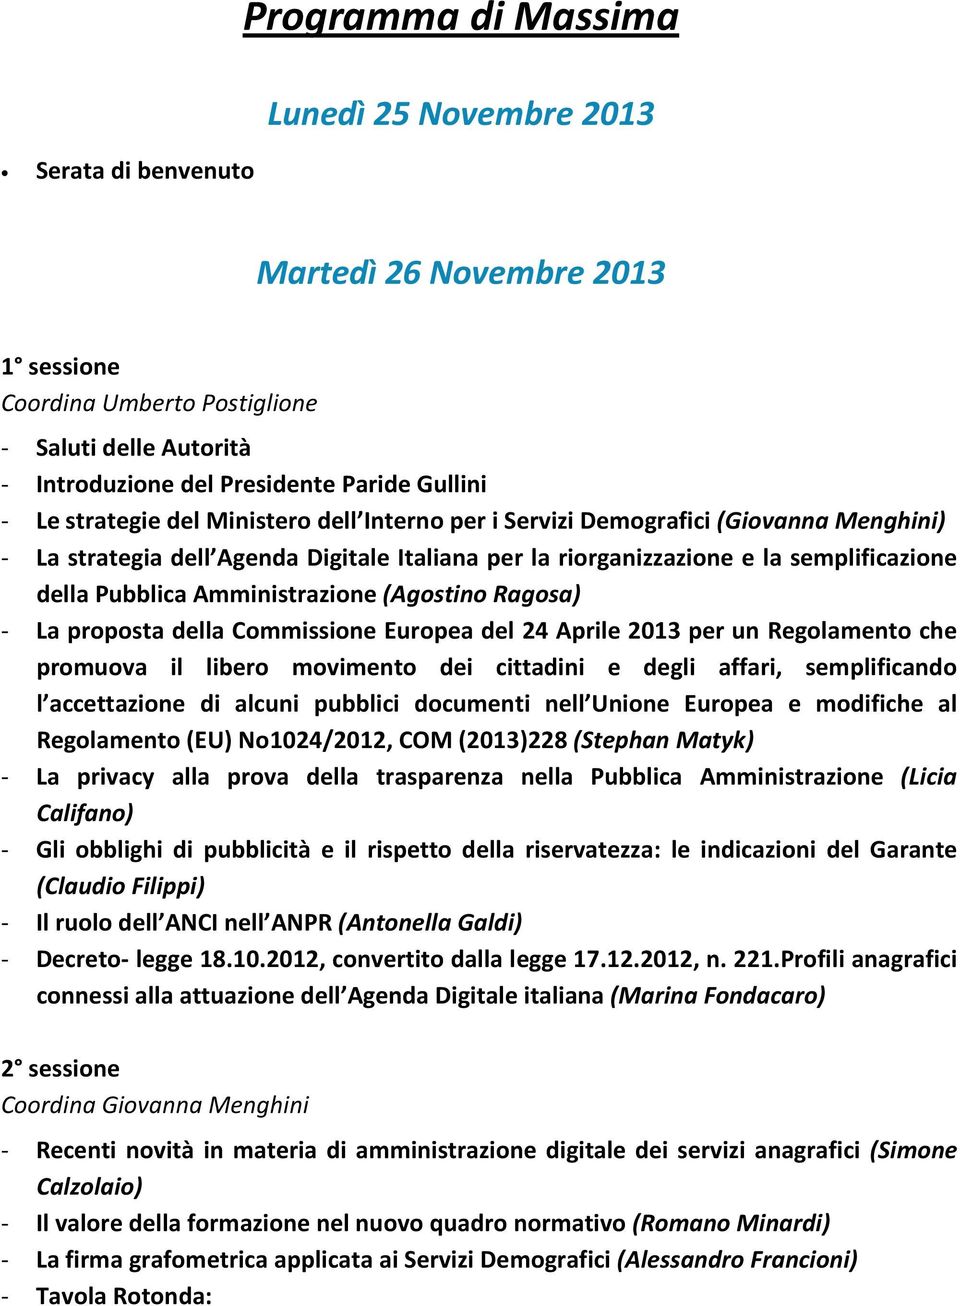 Amministrazione (Agostino Ragosa) - La proposta della Commissione Europea del 24 Aprile 2013 per un Regolamento che promuova il libero movimento dei cittadini e degli affari, semplificando l